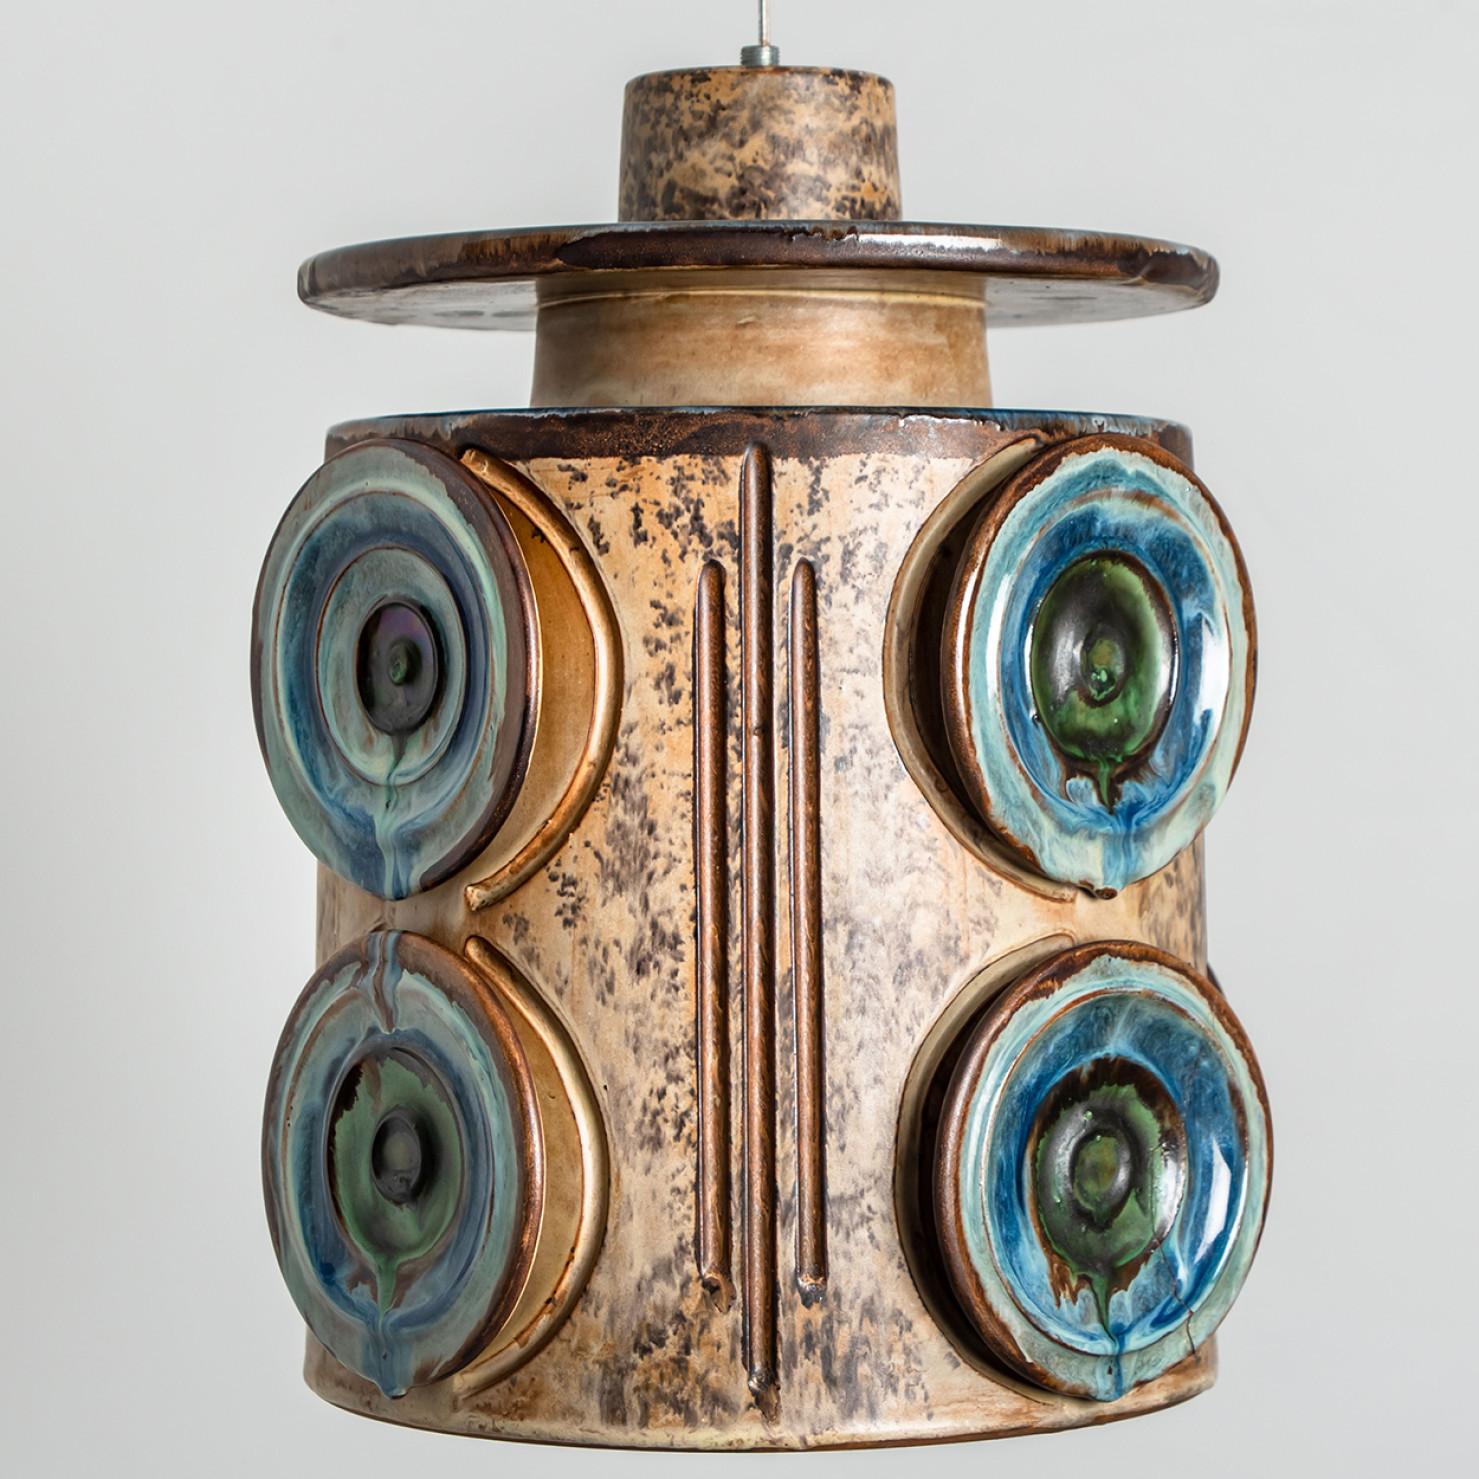 Wunderschöne runde Hängelampe mit einer ungewöhnlichen Form, hergestellt aus reichhaltiger meeresblauer Keramik, hergestellt in den 1970er Jahren in Dänemark. Wir haben auch eine Vielzahl von einzigartigen farbigen Keramik-Licht-Sets und